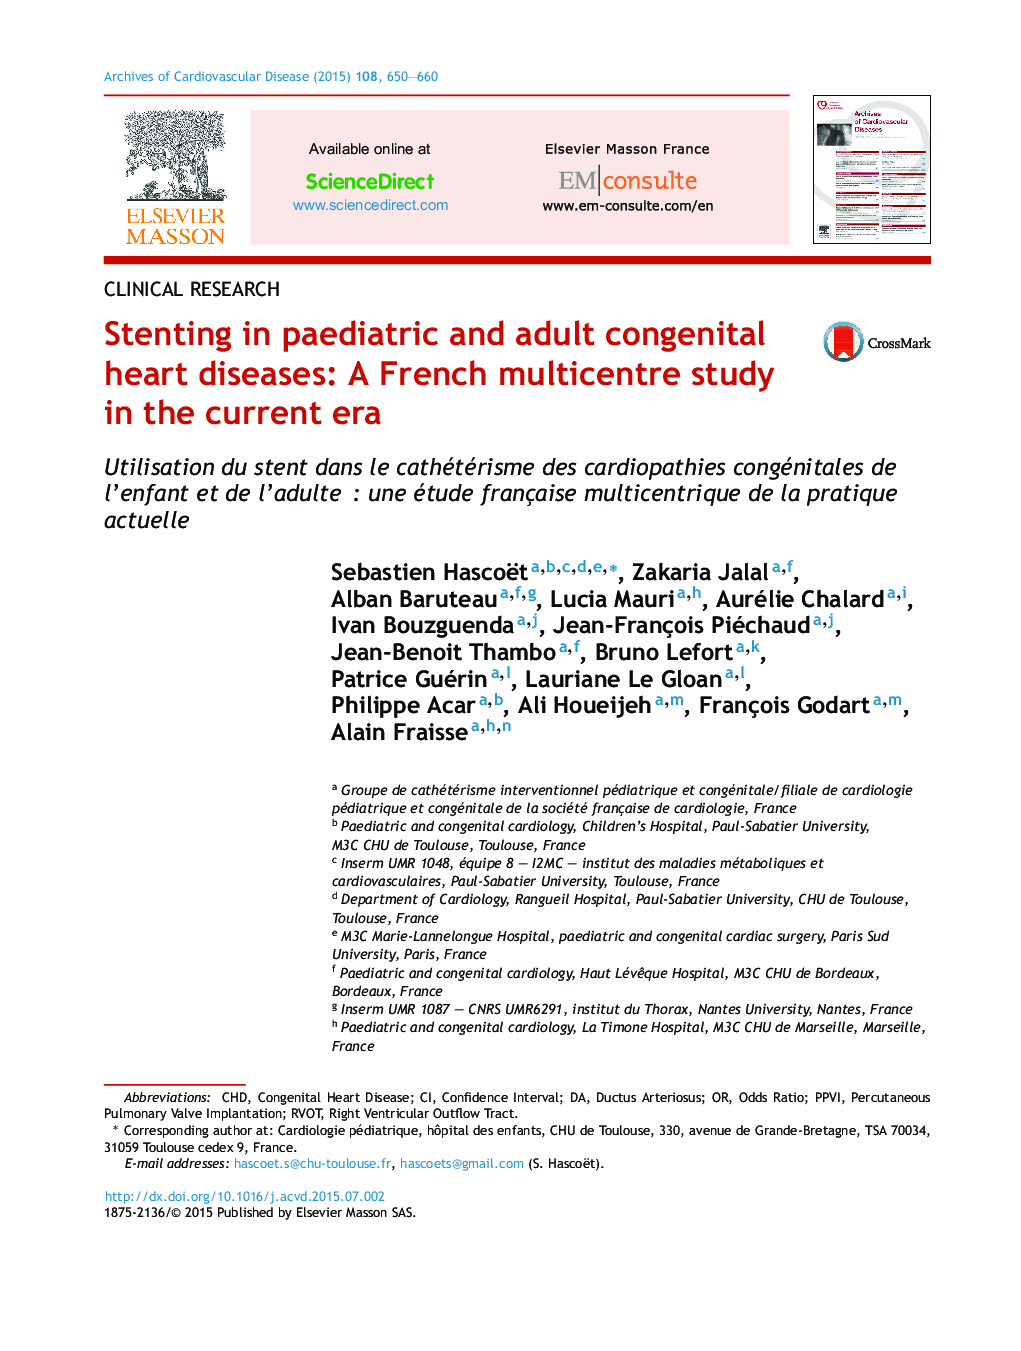 استنت زدن در کودکان و بزرگسالان بیماری های مادرزادی قلبی: مطالعات چندرسانه ای فرانسه در دوران کنونی 